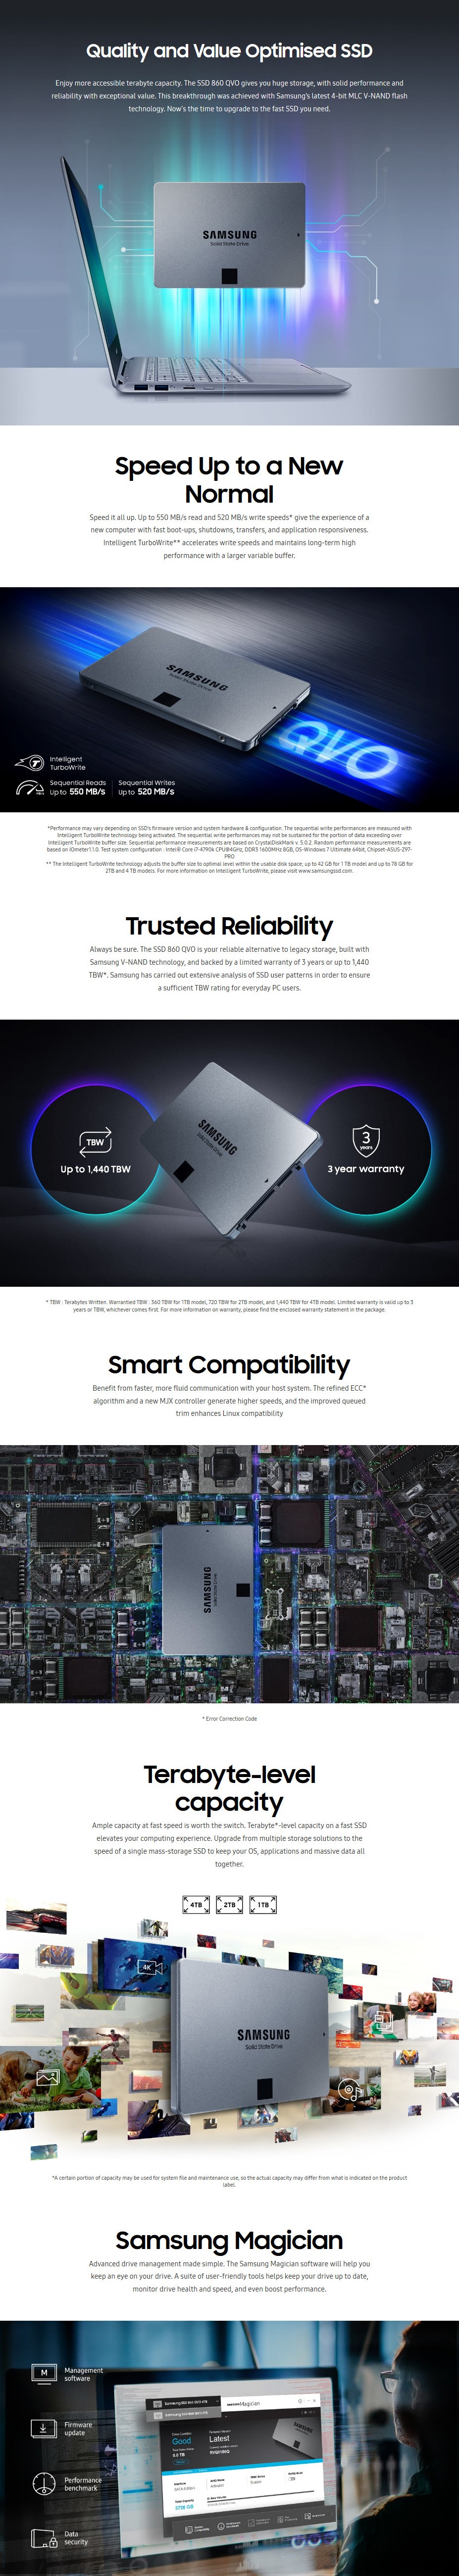 Samsung 860 QVO 1TB 2.5" SATA III 6GB/s 4-Bit MLC V-NAND SSD MZ-76Q1T0BW - Desktop Overview 1